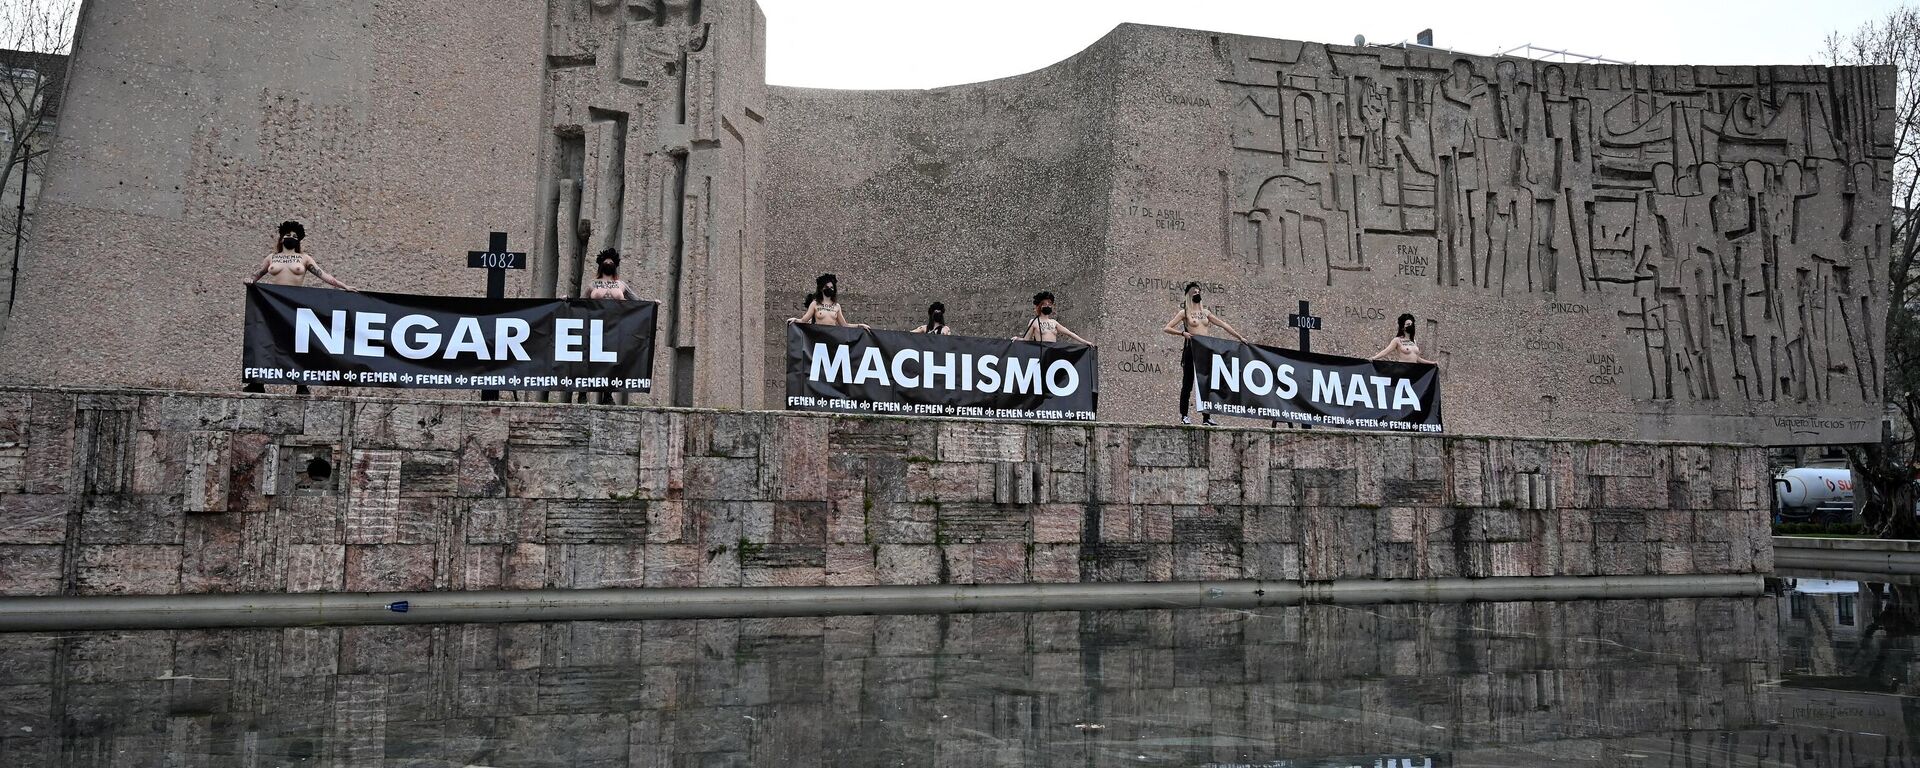 Activistas de Femen sostienen pancartas que dicen Negar el sexismo nos mata durante una protesta en la Plaza de Colón de Madrid el 5 de marzo de 2021. - Sputnik Mundo, 1920, 05.03.2021